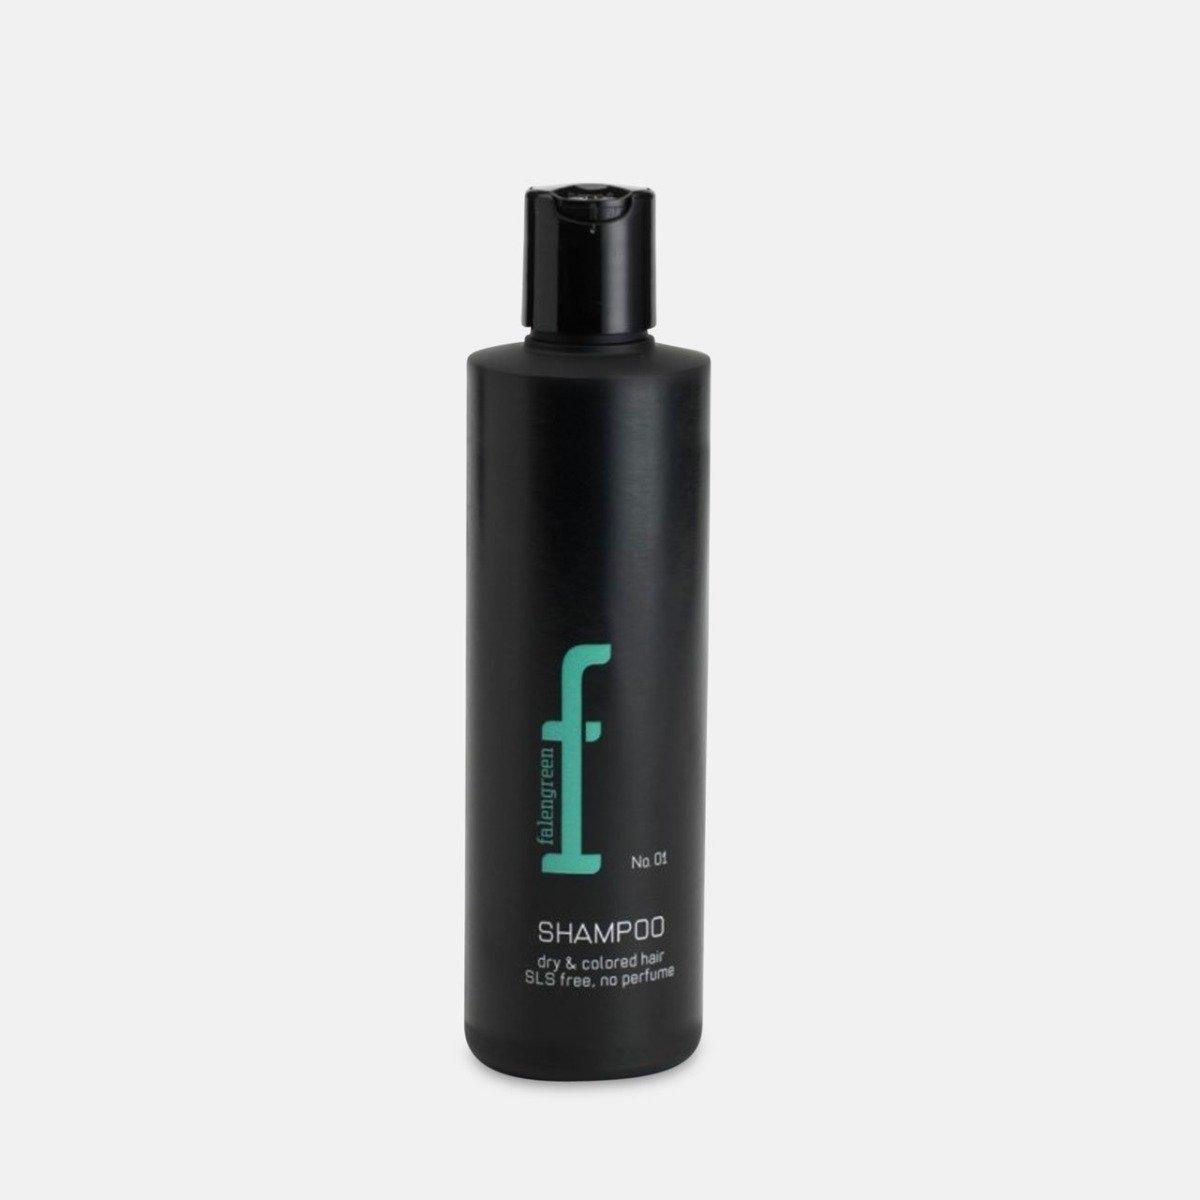 By Falengreen No.1 Shampoo - Tørt og farvet hår - 250 ml Hårpleje By Falengreen   